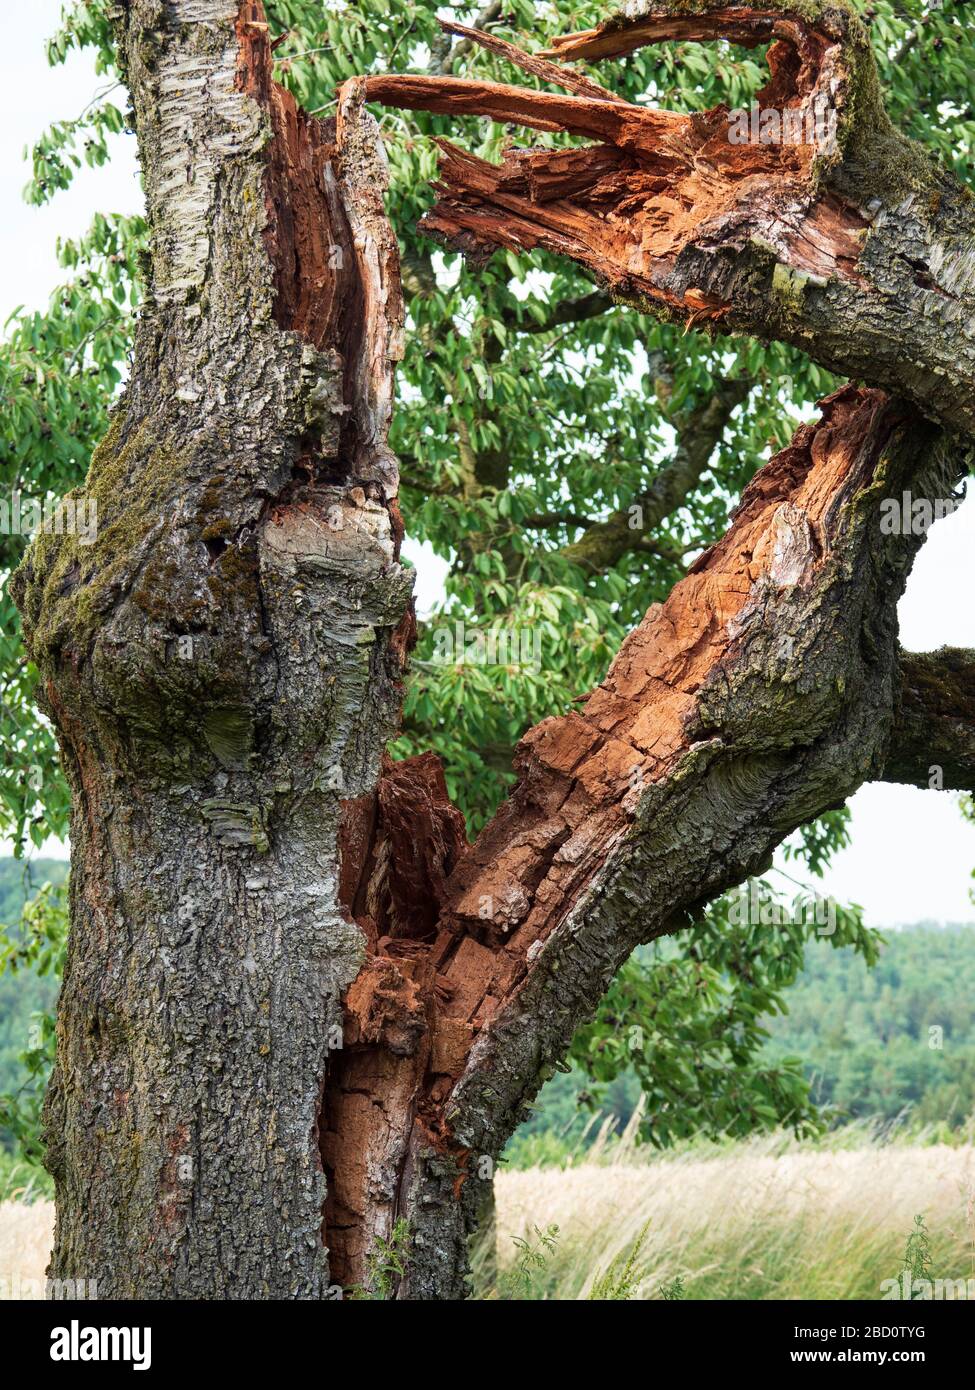 Alter abgebrochener Kirschbaum in der Region Mönchswald, Nähe Brombachsee, Altmühltal, Franken, Bayern, Deutschland Foto Stock